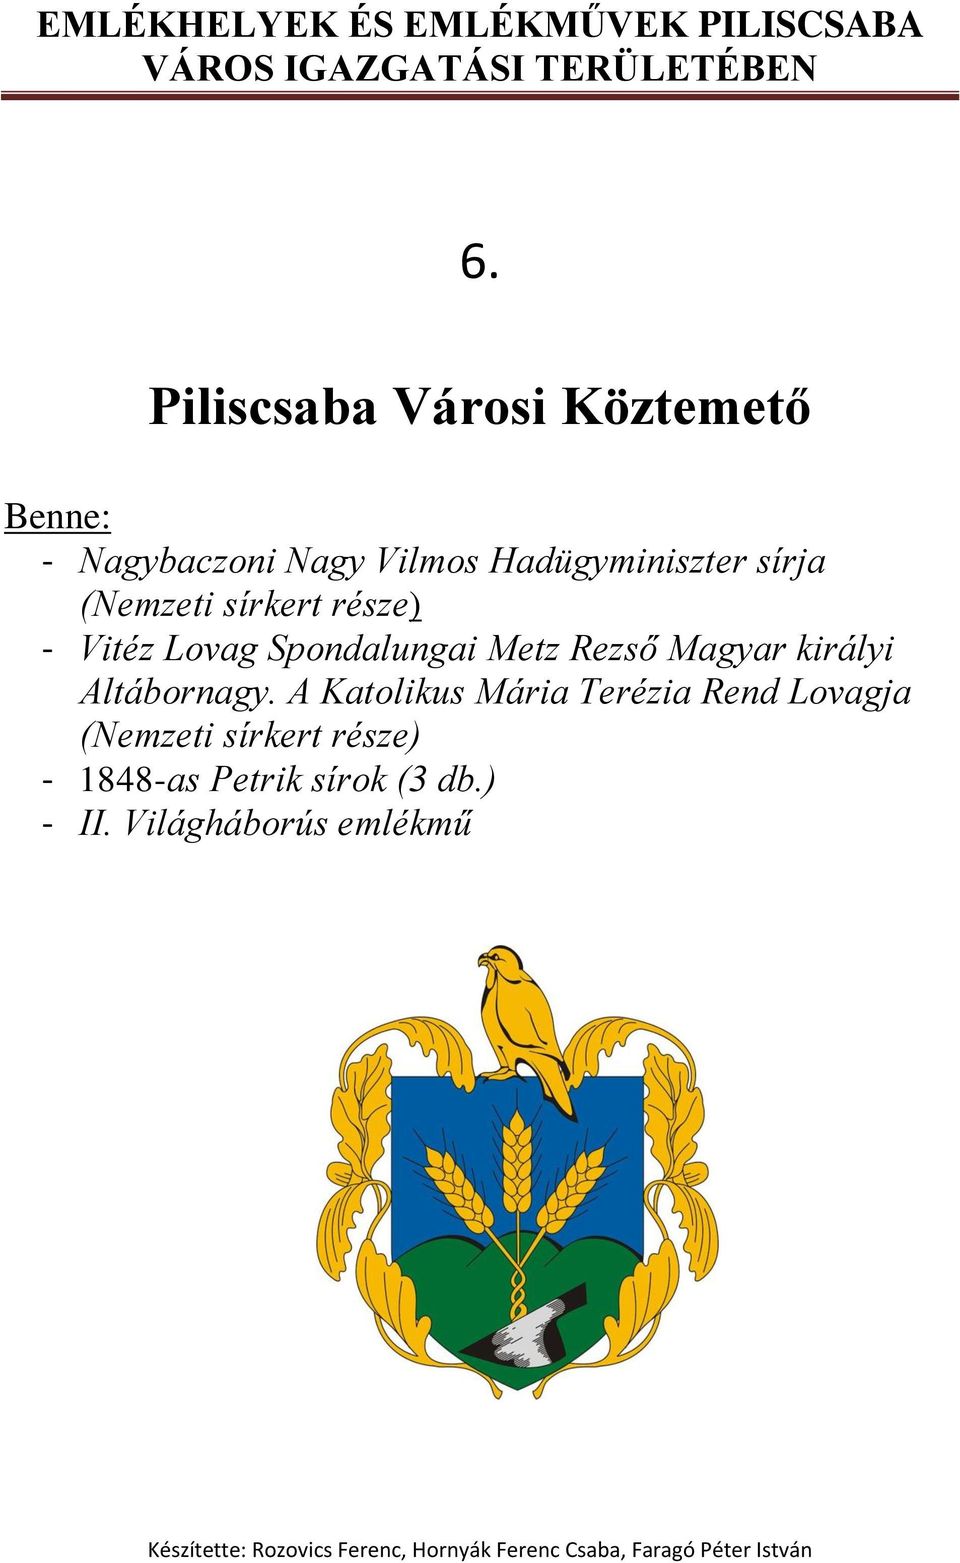 Metz Rezső Magyar királyi Altábornagy.